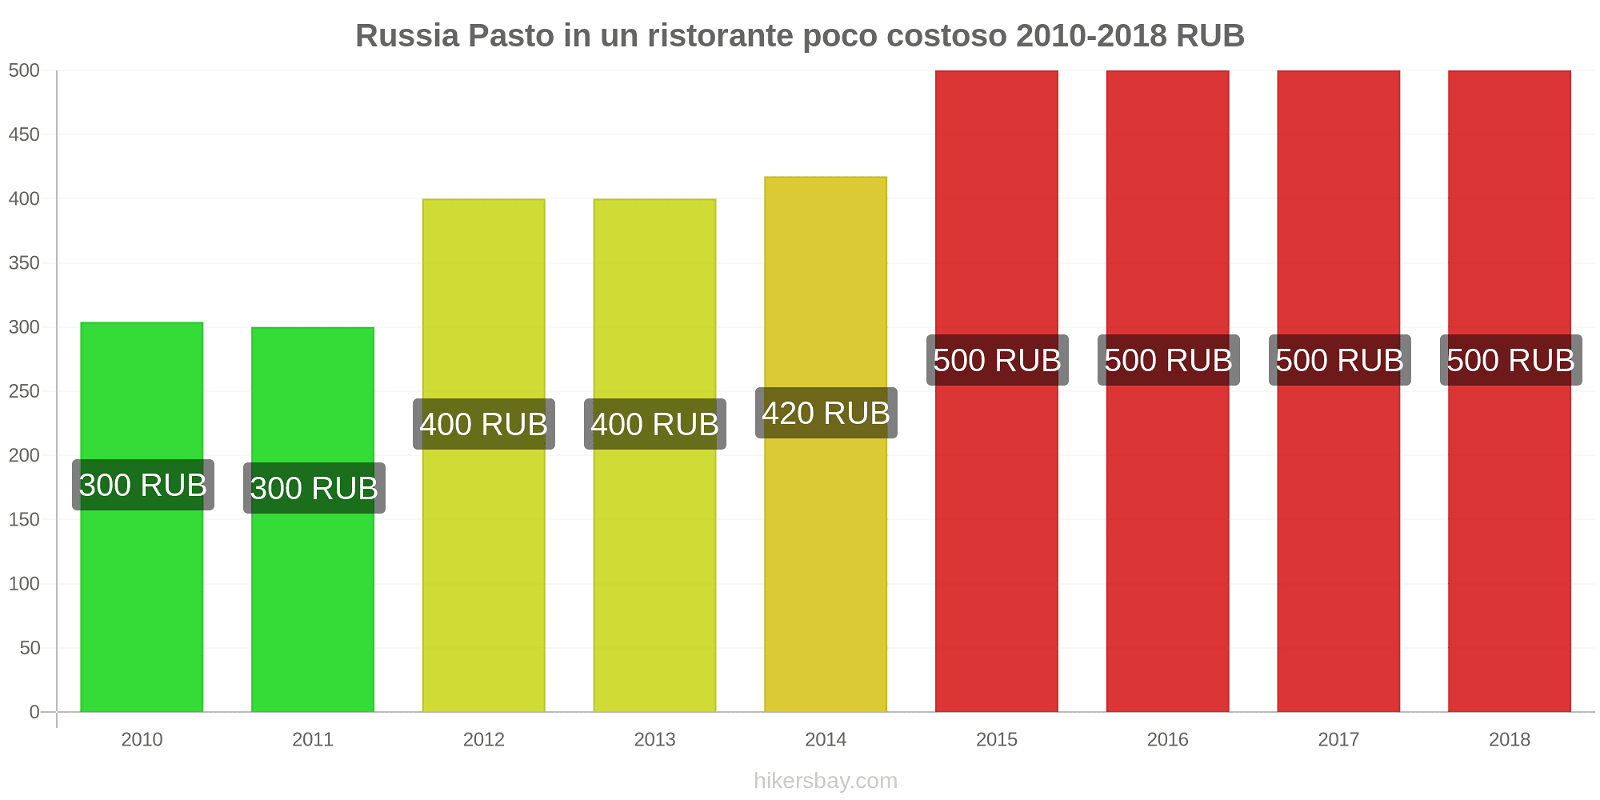 Russia cambi di prezzo Pasto in un ristorante economico hikersbay.com